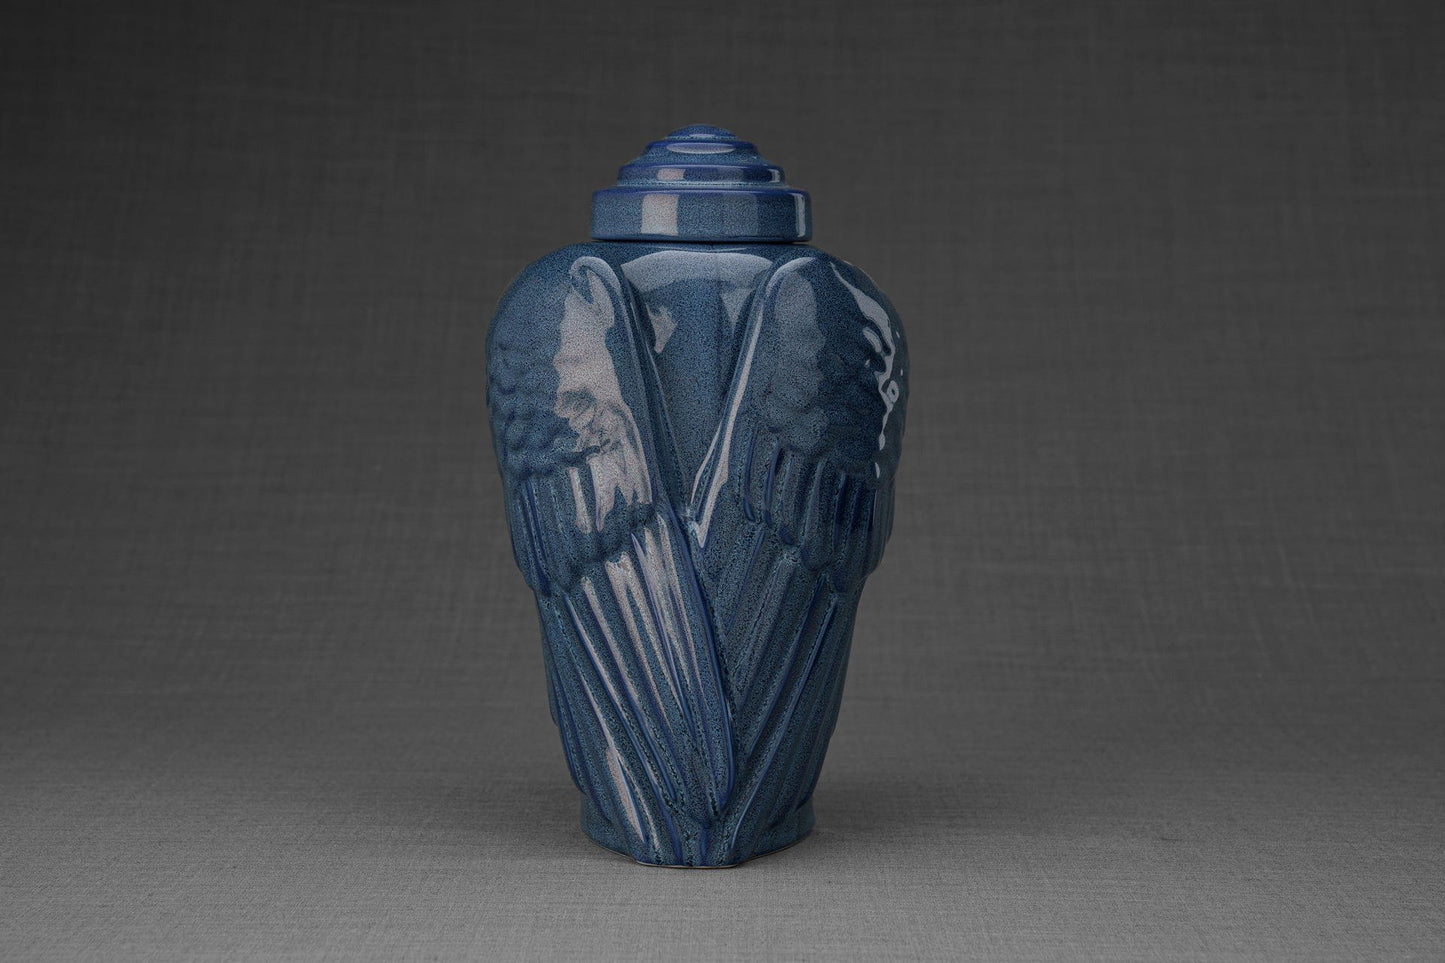 Pulvis Art Urns Adult Size Urn Handmade Cremation Urn for Ashes "Wings" - Large | Blue Melange | Ceramic